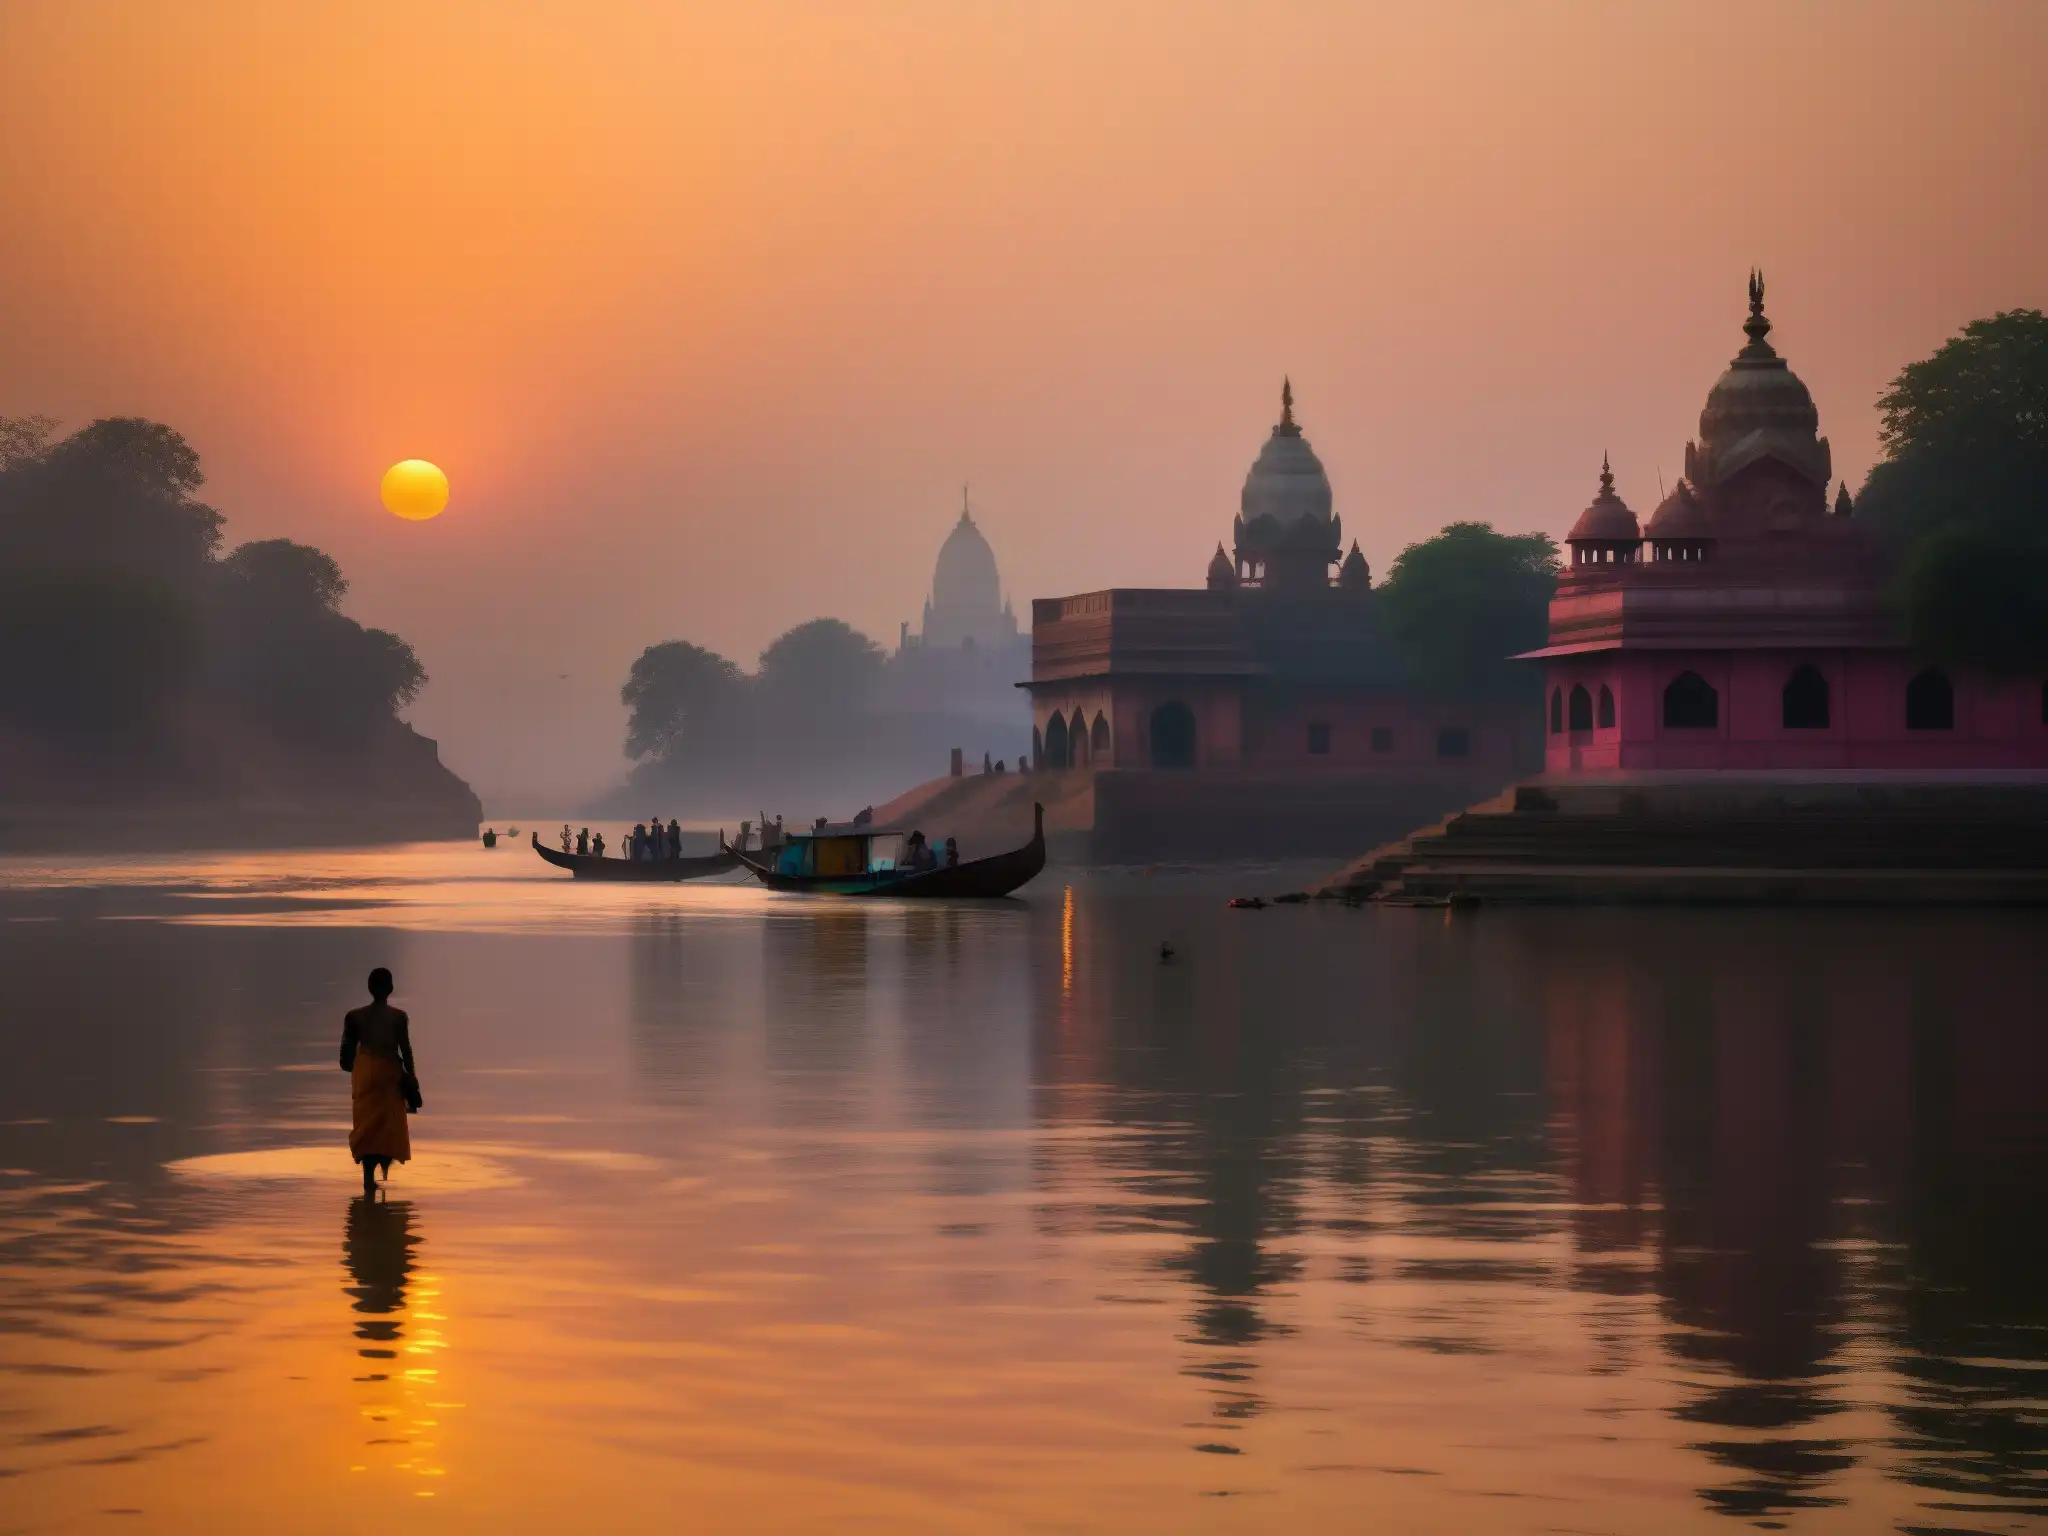 Imagen de las neblinosas orillas del río Ganges al amanecer, con un ritual hindú y el ambiente místico de leyendas urbanas Ganges India